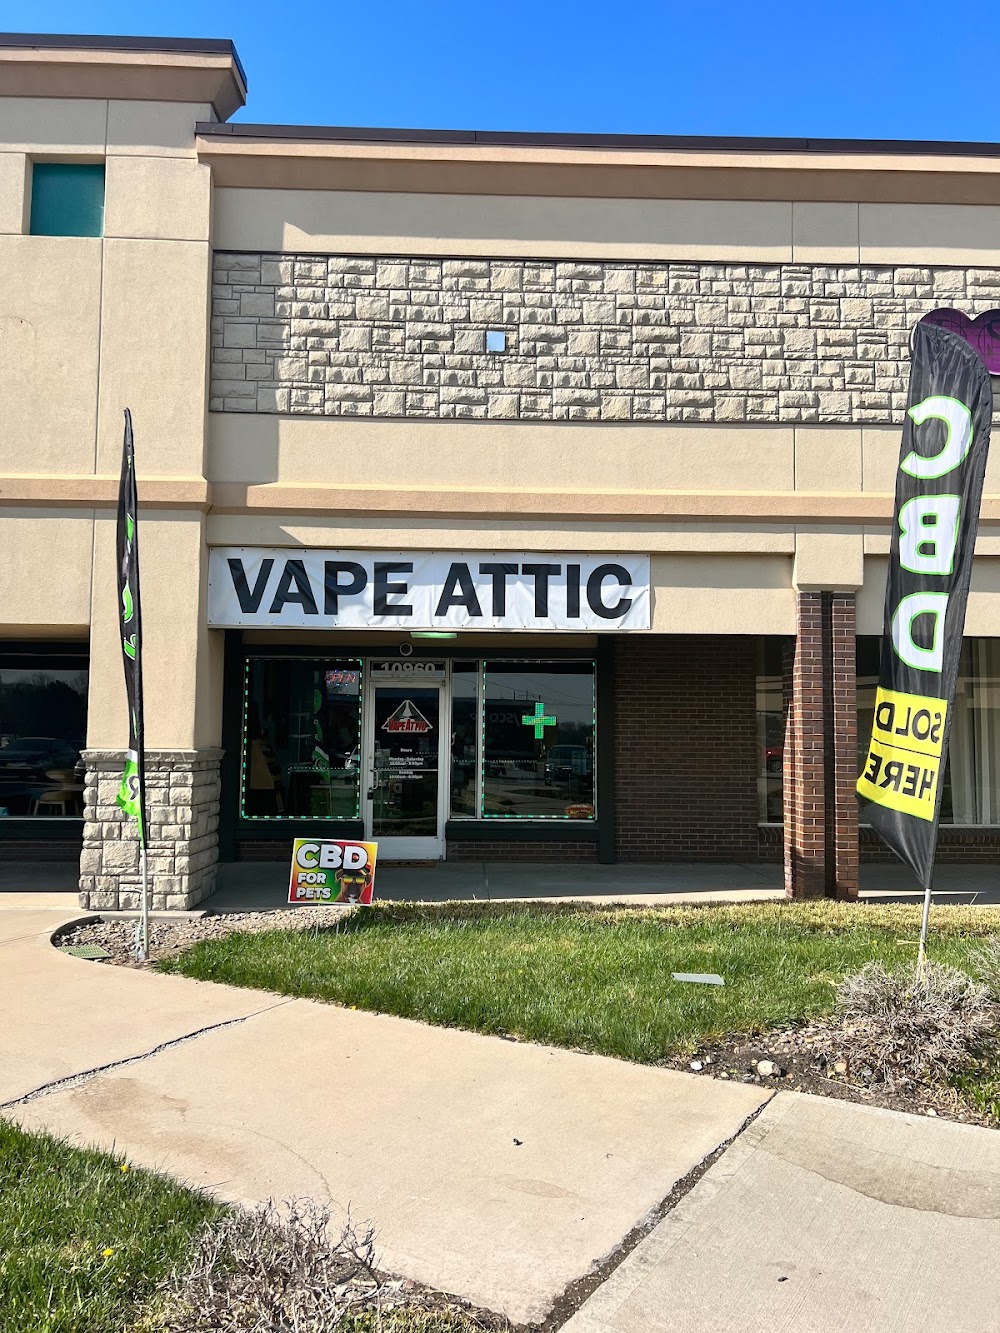 Vape Attic | CBD, HHC, Kratom | Vape Shop & Smoke Shop